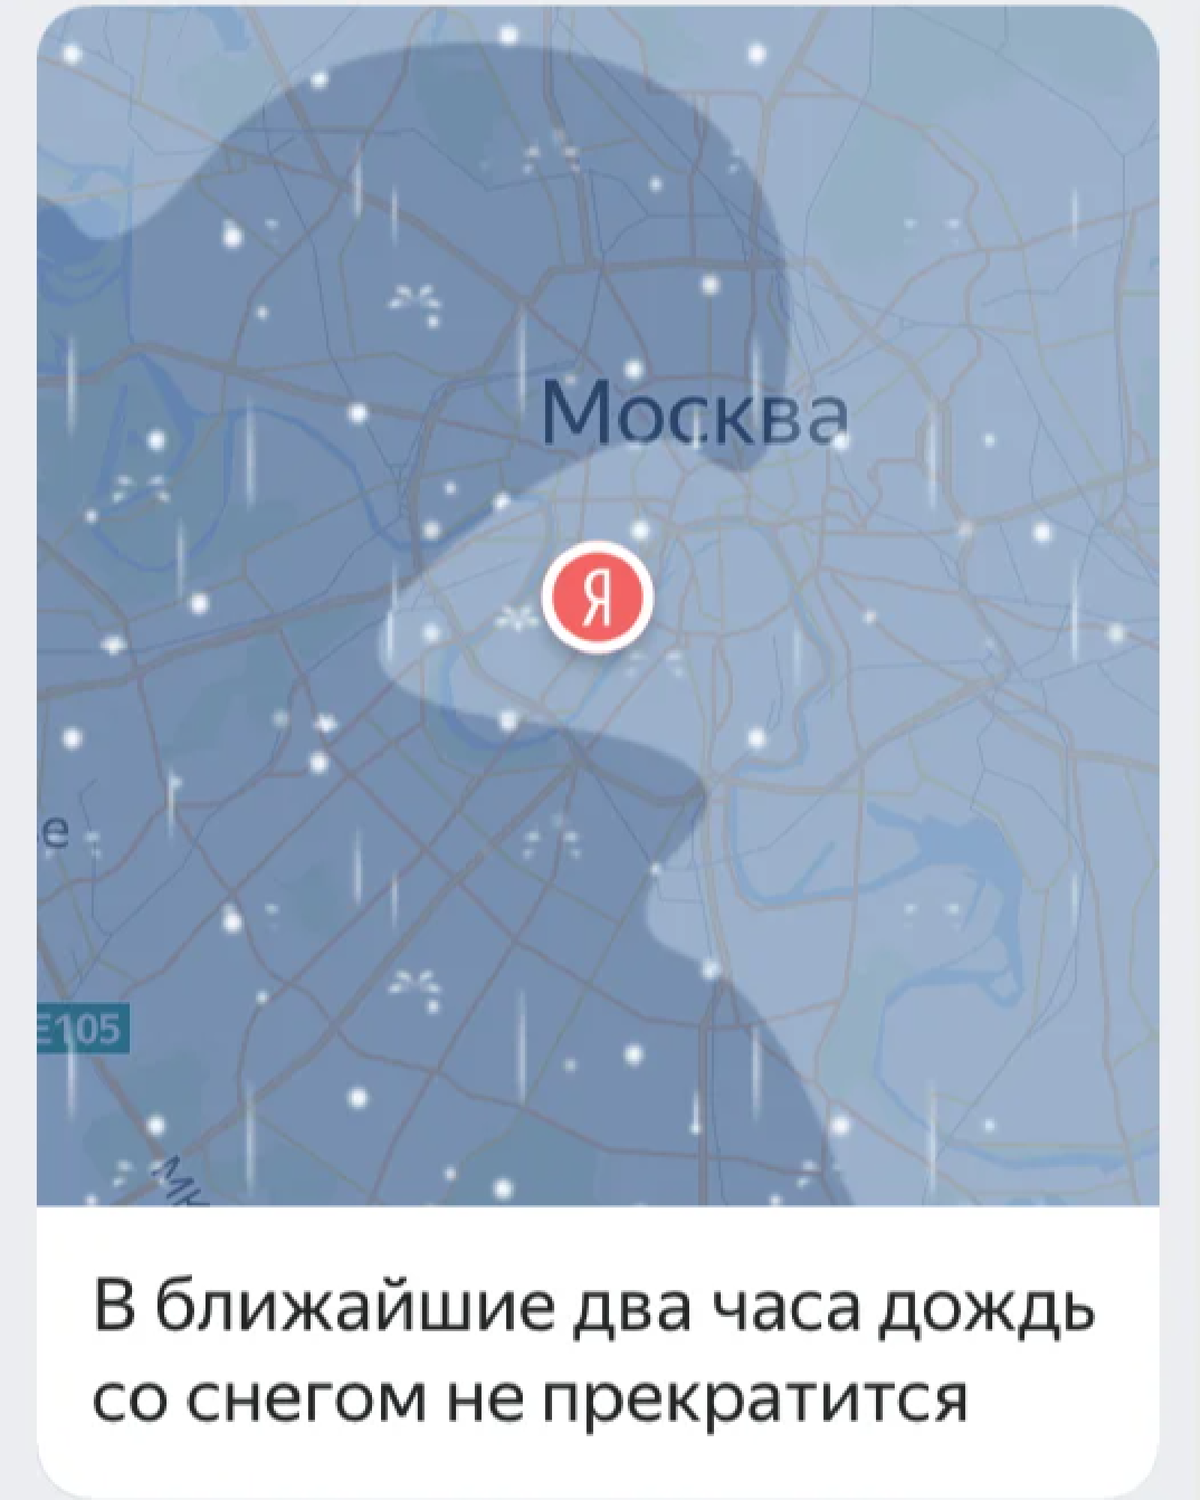 Погода показать на карте дождь. Карта осадков. Карта осадков Москва. Погода карта осадков. Карта осадков сейчас.